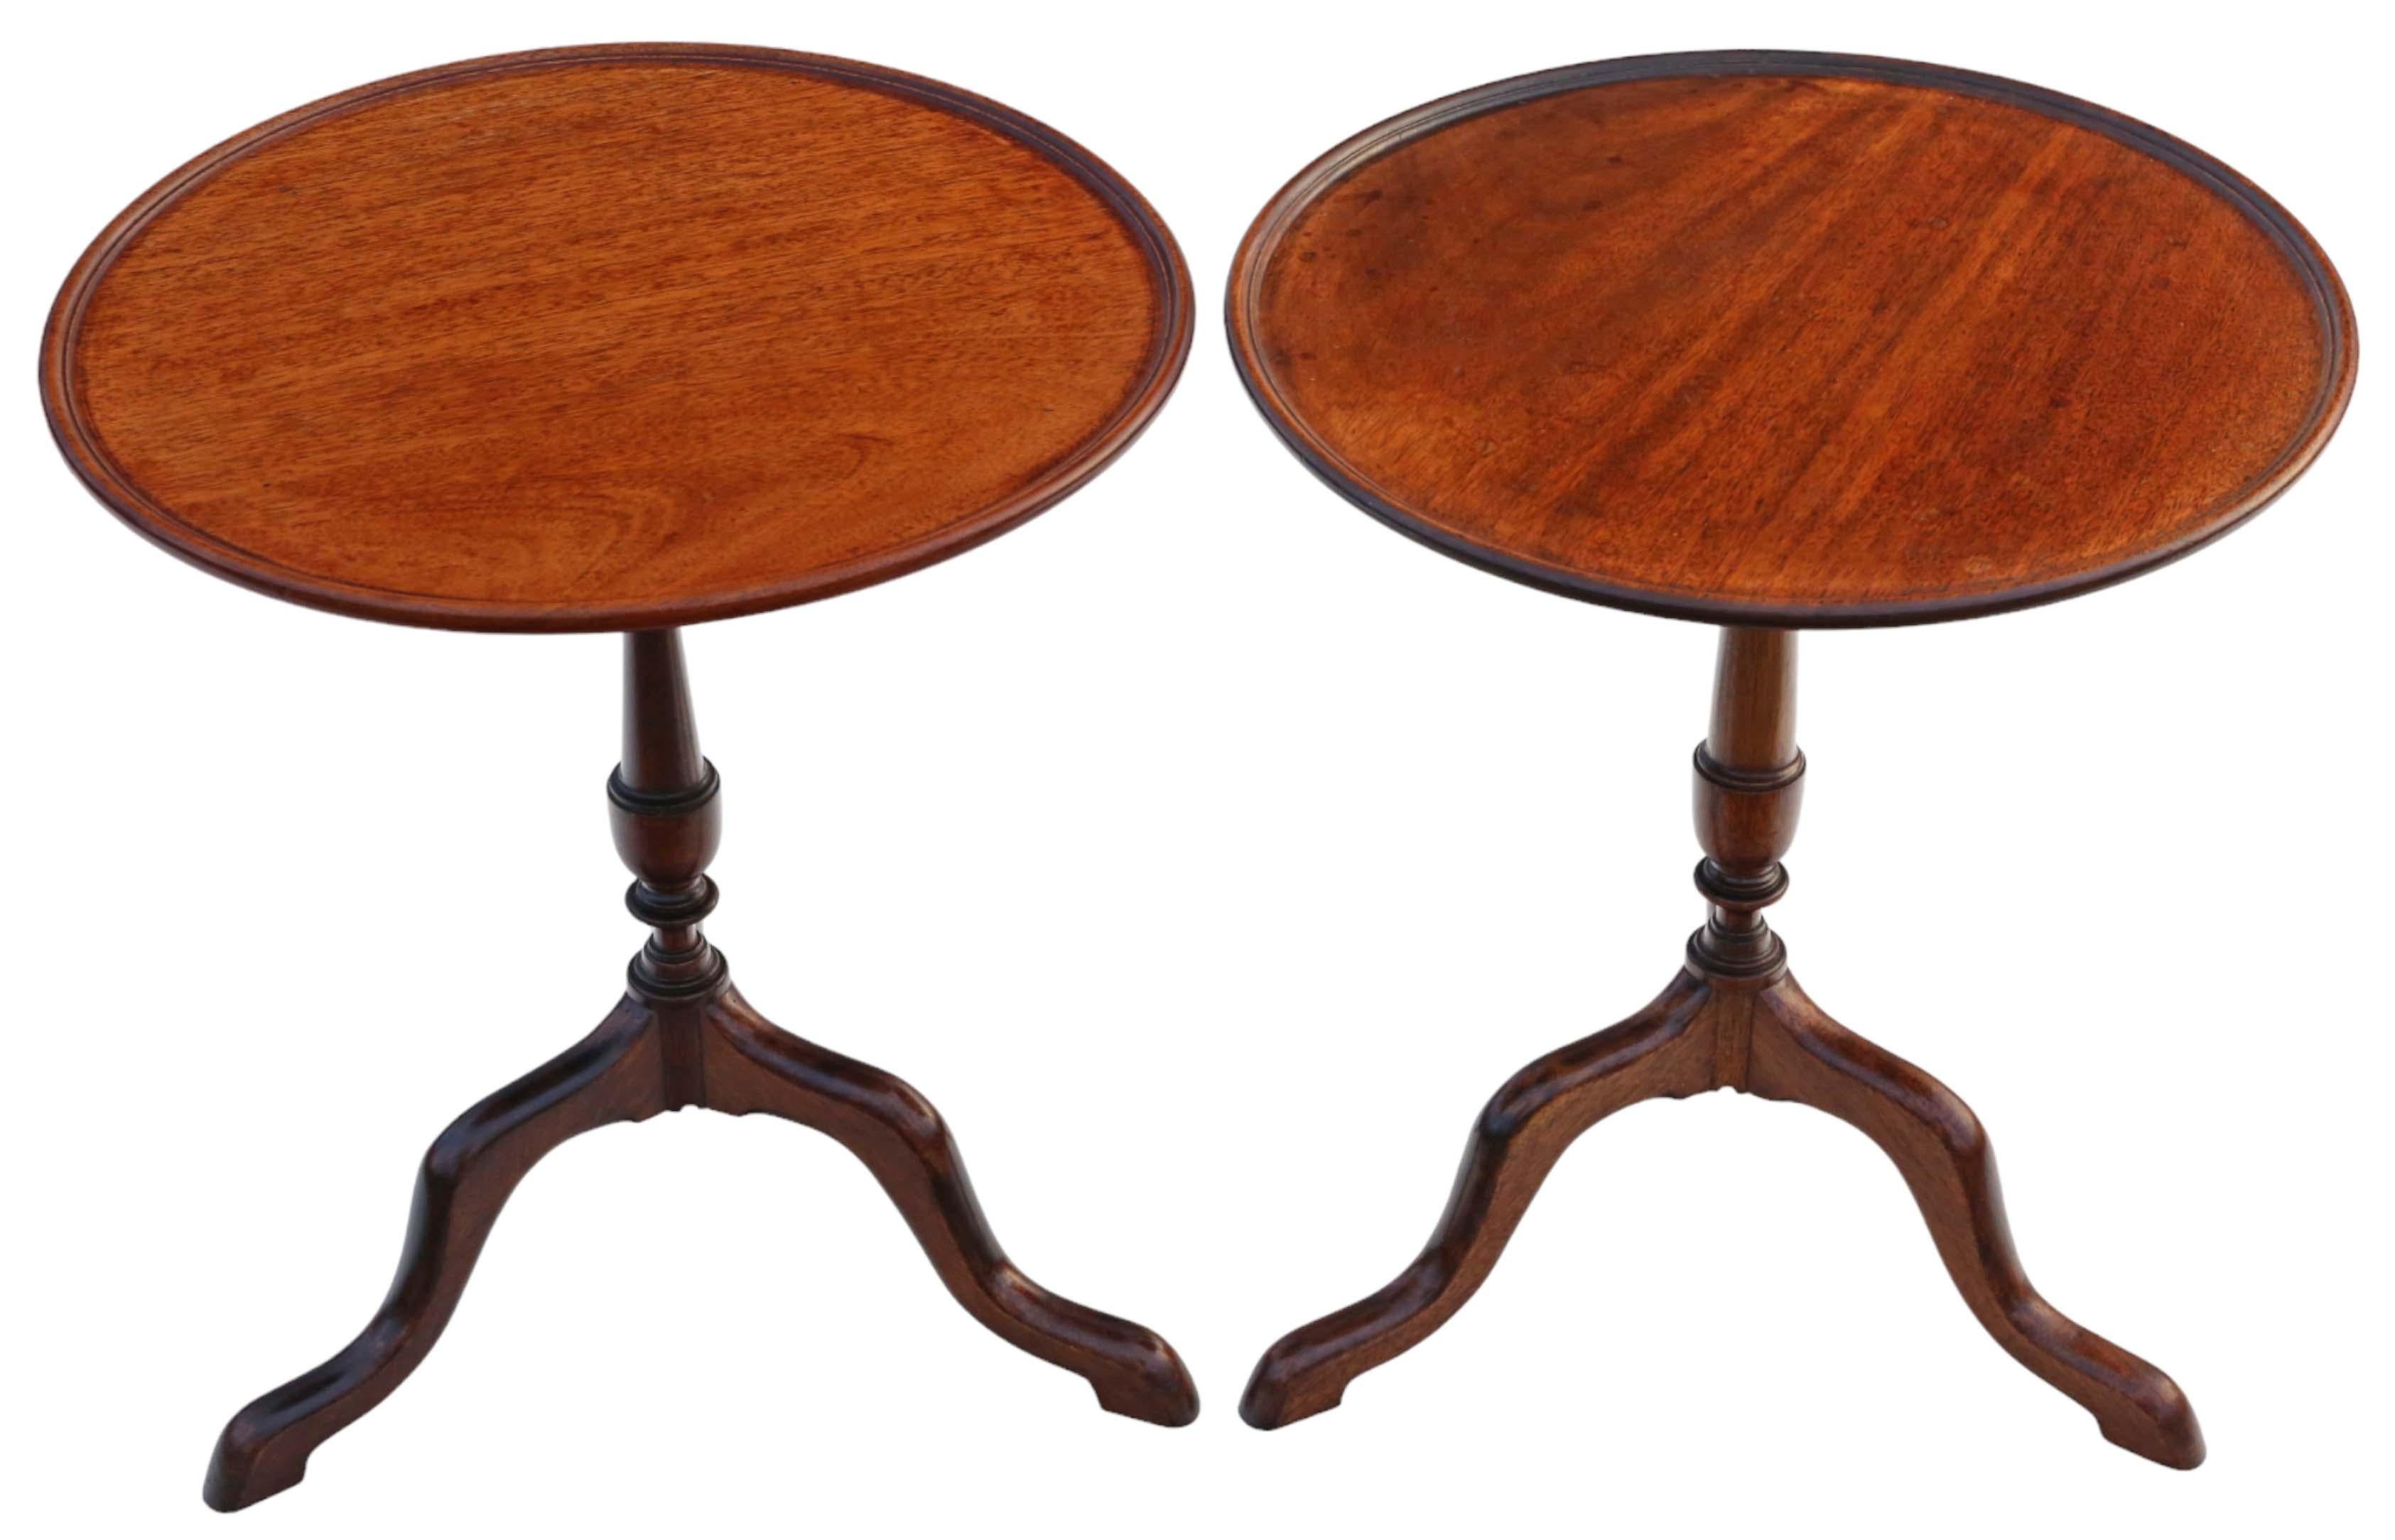 Zwei hochwertige Wein- oder Beistelltische aus Mahagoni des 19. Jahrhunderts.

Diese Tische sind solide, ohne lose Verbindungen und präsentieren sich als charmante und sehr seltene dekorative Fundstücke.

Es gibt keine Anzeichen für Holzwürmer, und